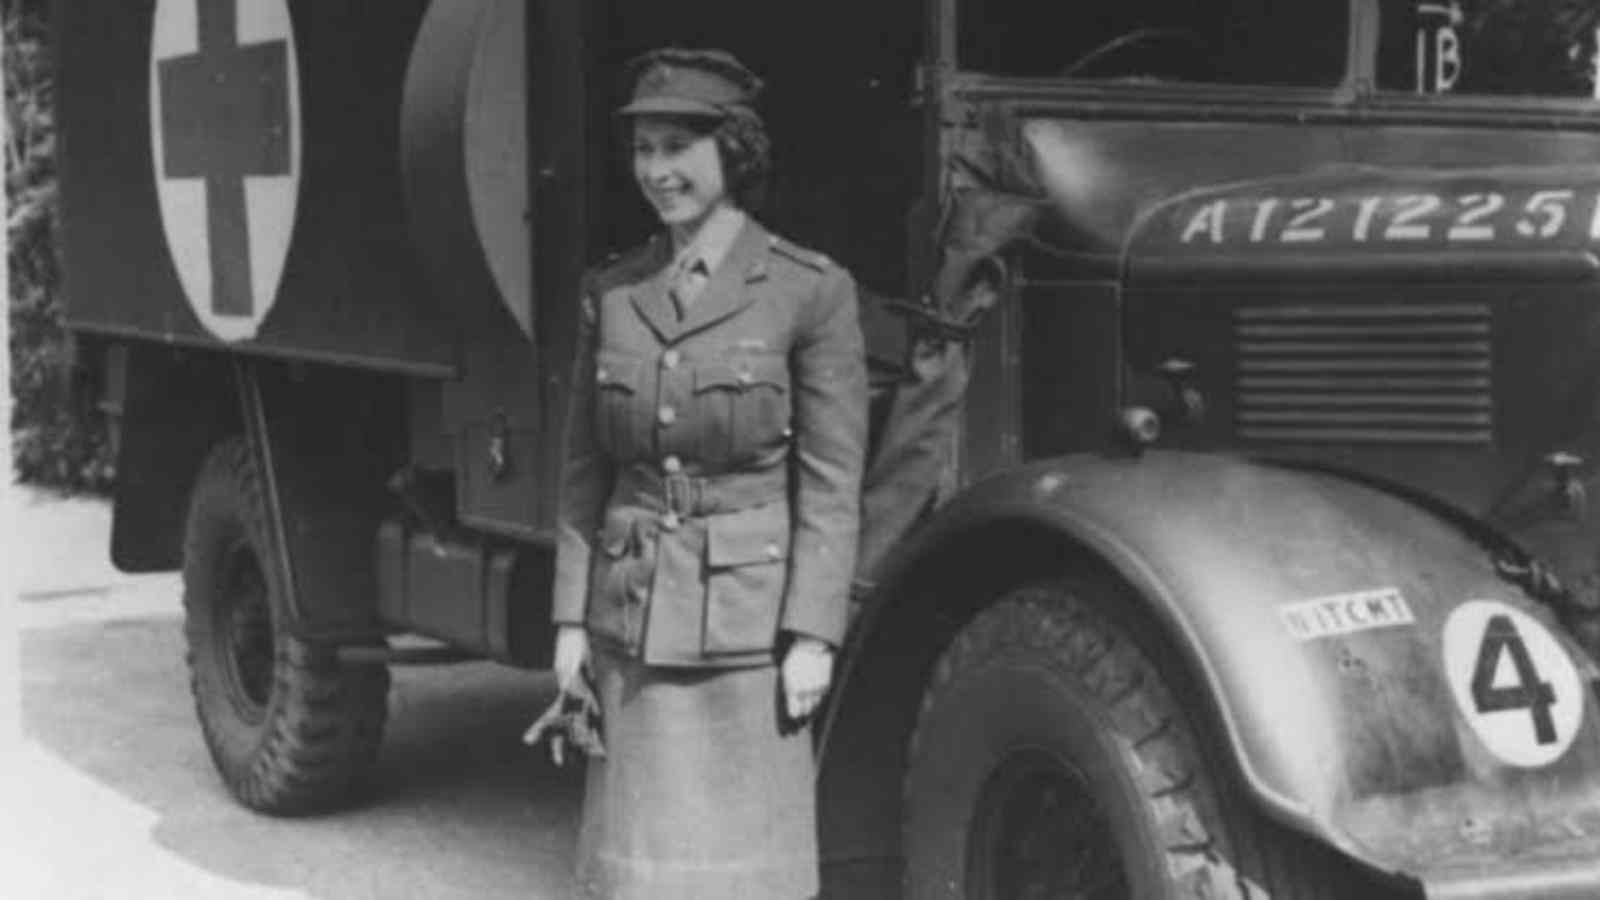 Queen Elizabeth II during the World War II